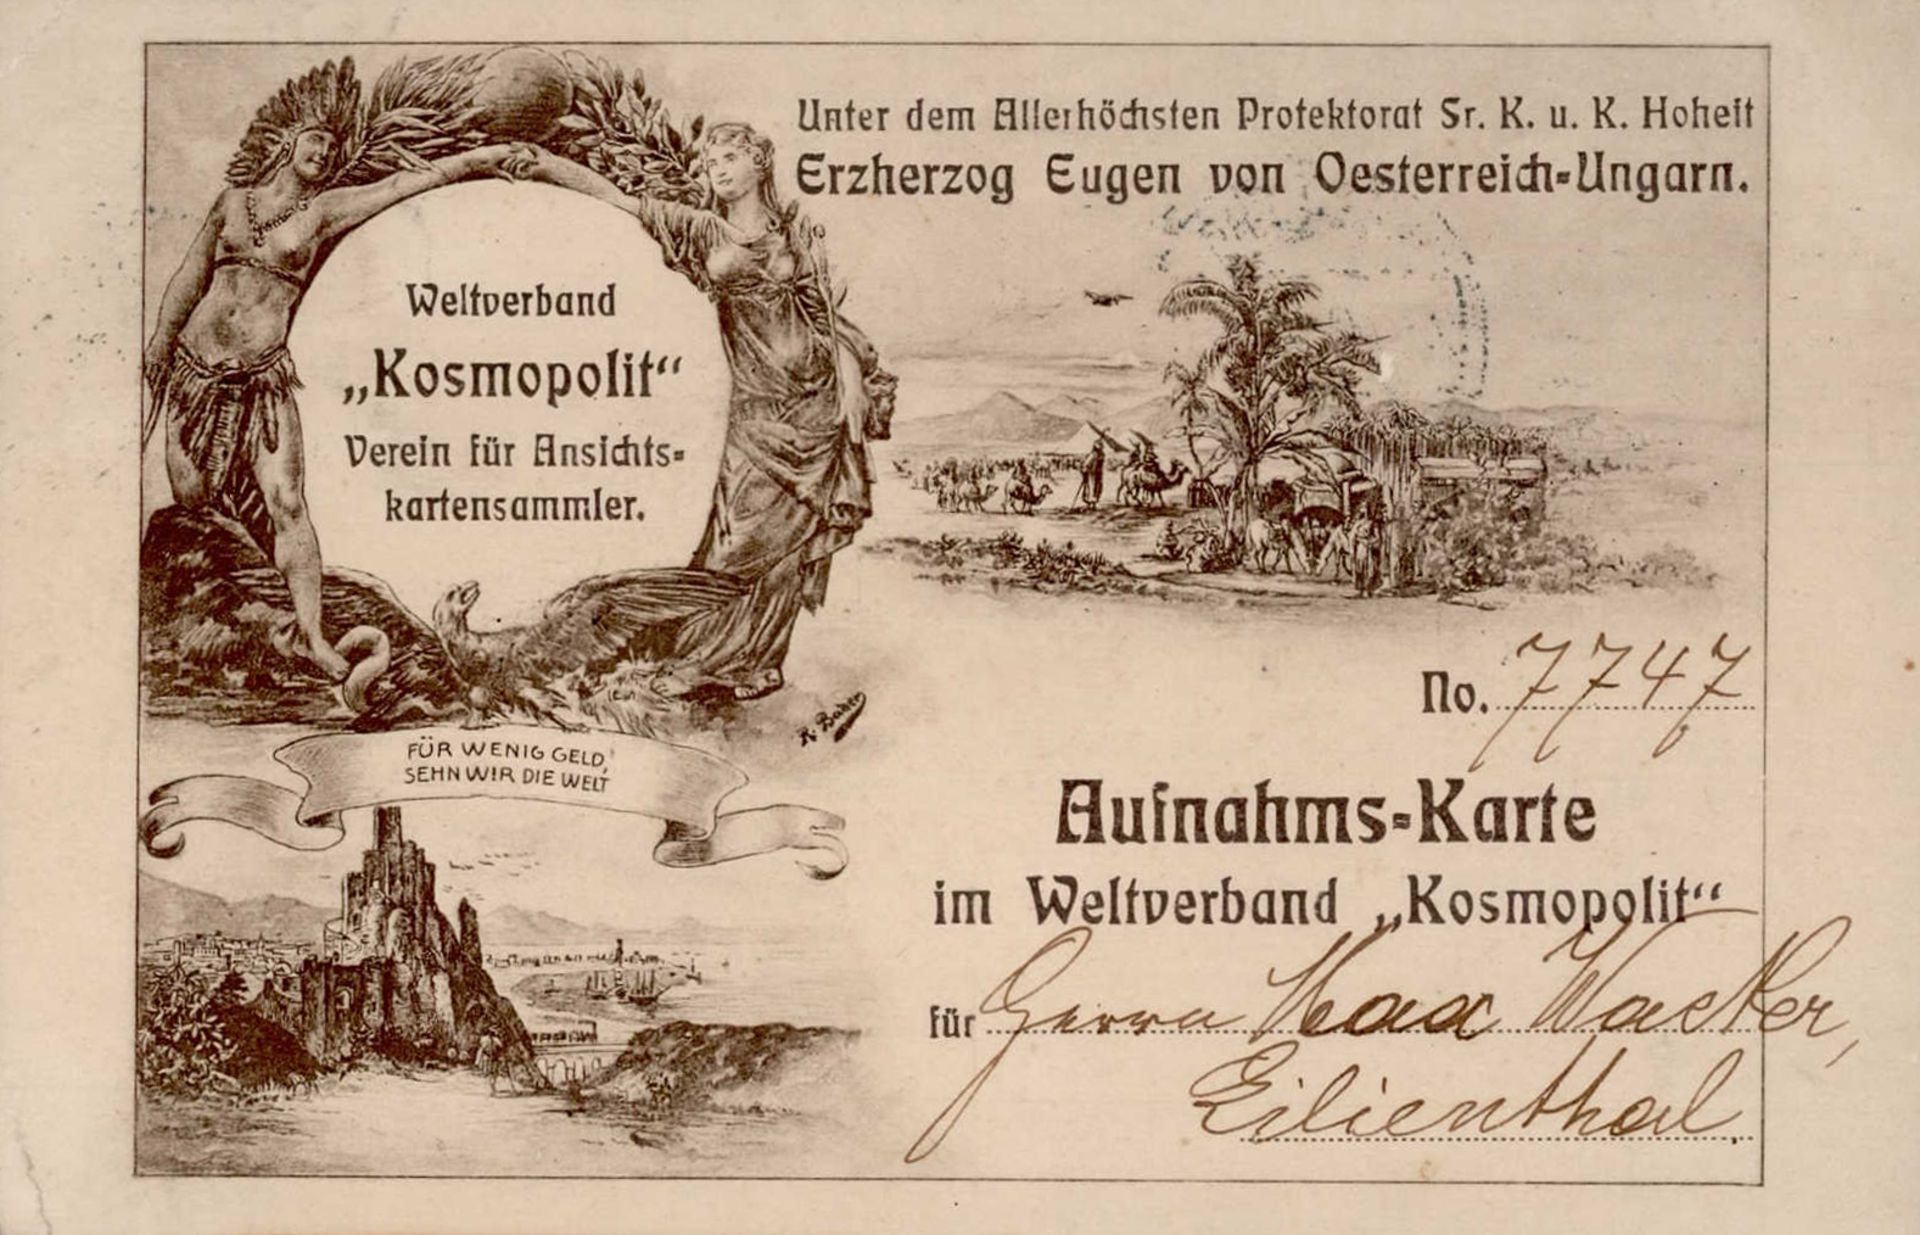 AK-Geschichte Weltverband Kosmopolit Verein für Ansichtskartensammler Aufnahms-Karte 1909 I-II (